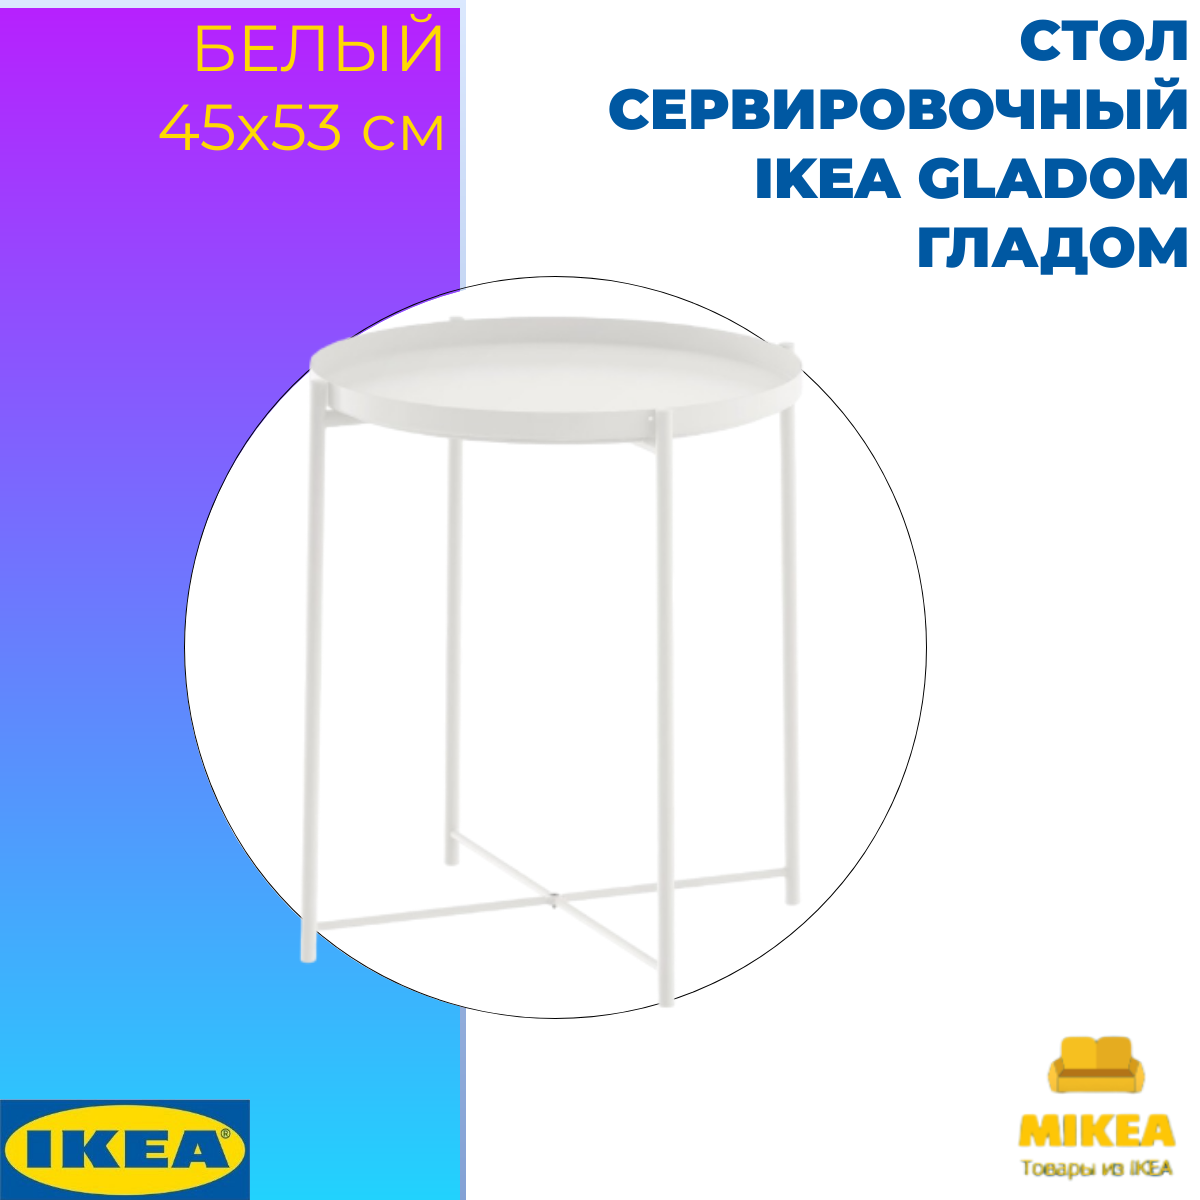 Стол сервировочный, белый 45×53 СМ IKEA GLADOM